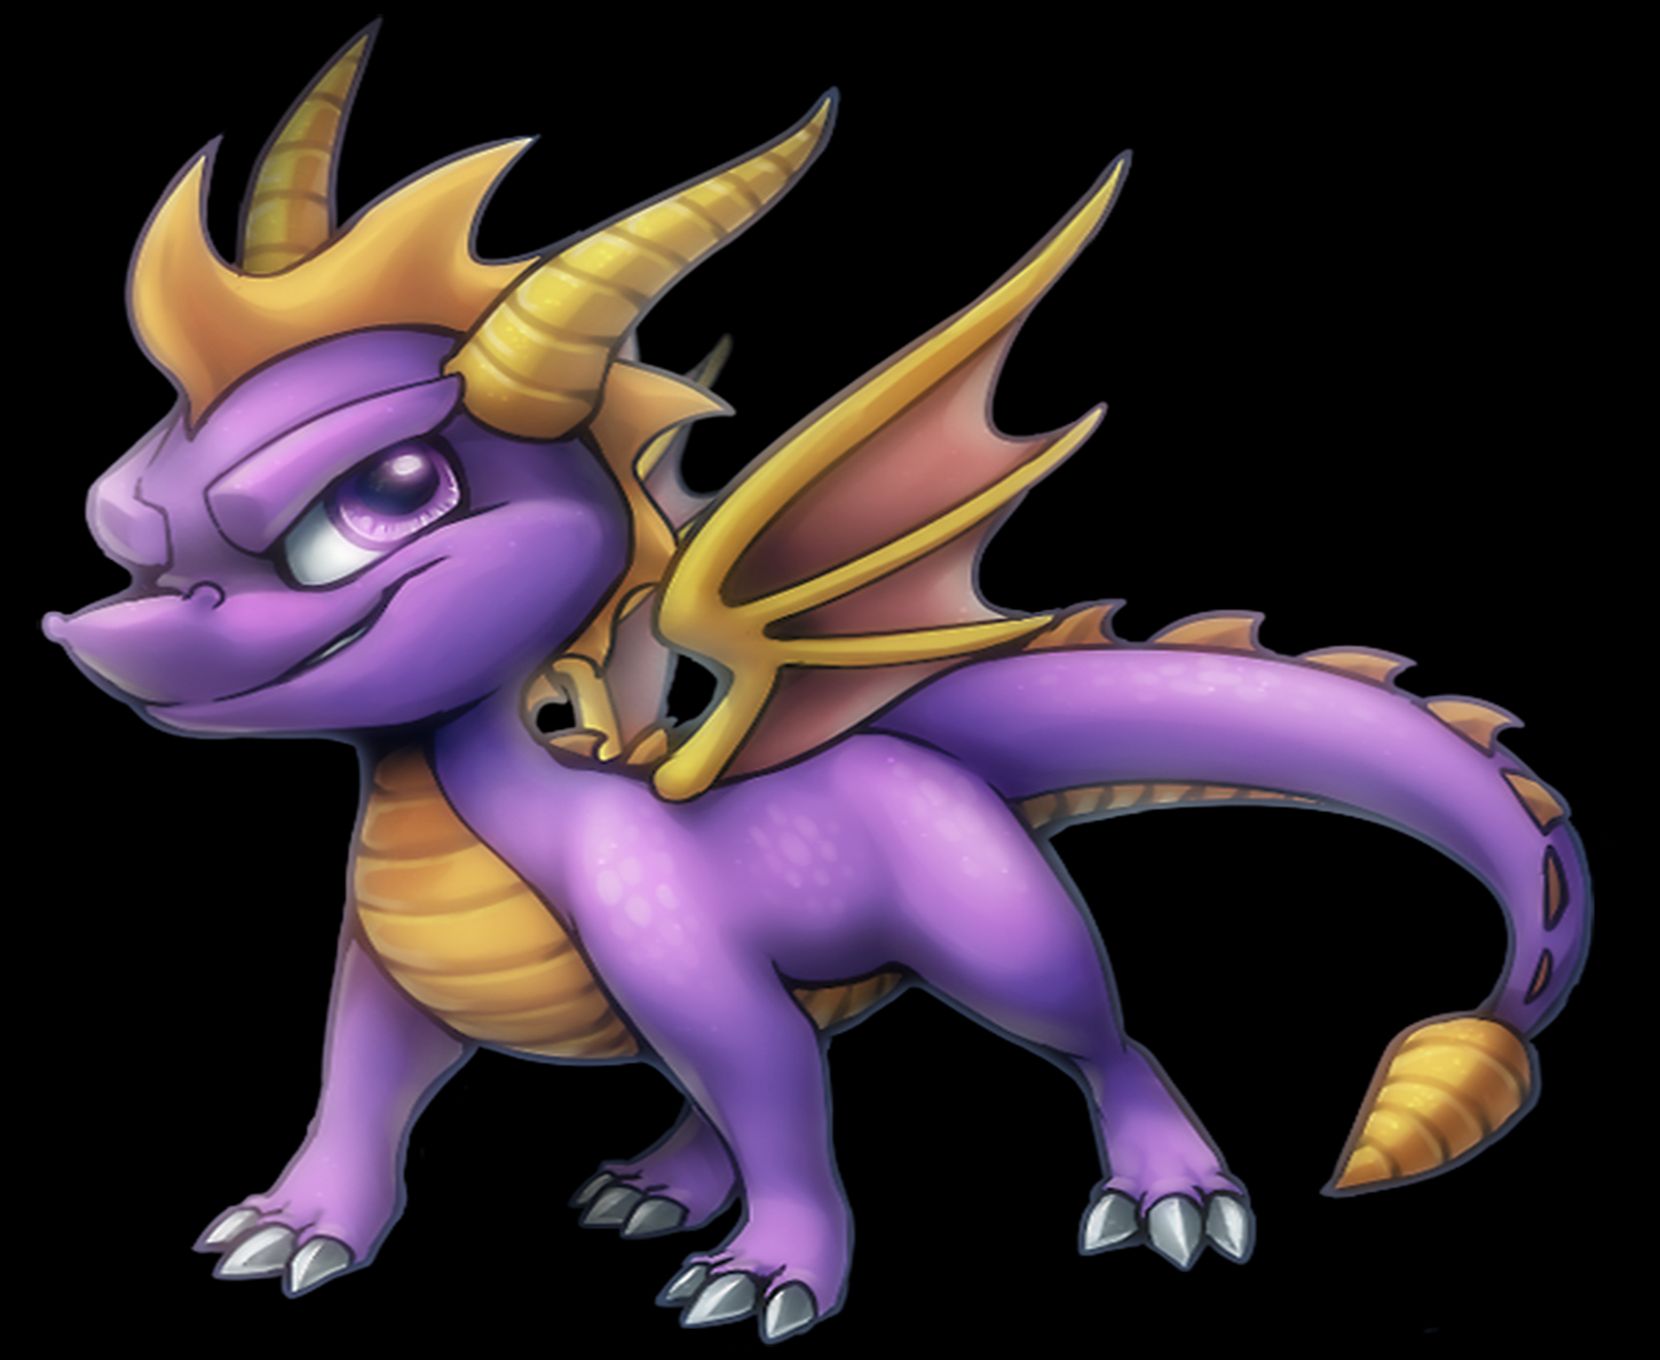 Descarga gratis la imagen Videojuego, Spyro (Personaje), Spyro The Dragon en el escritorio de tu PC